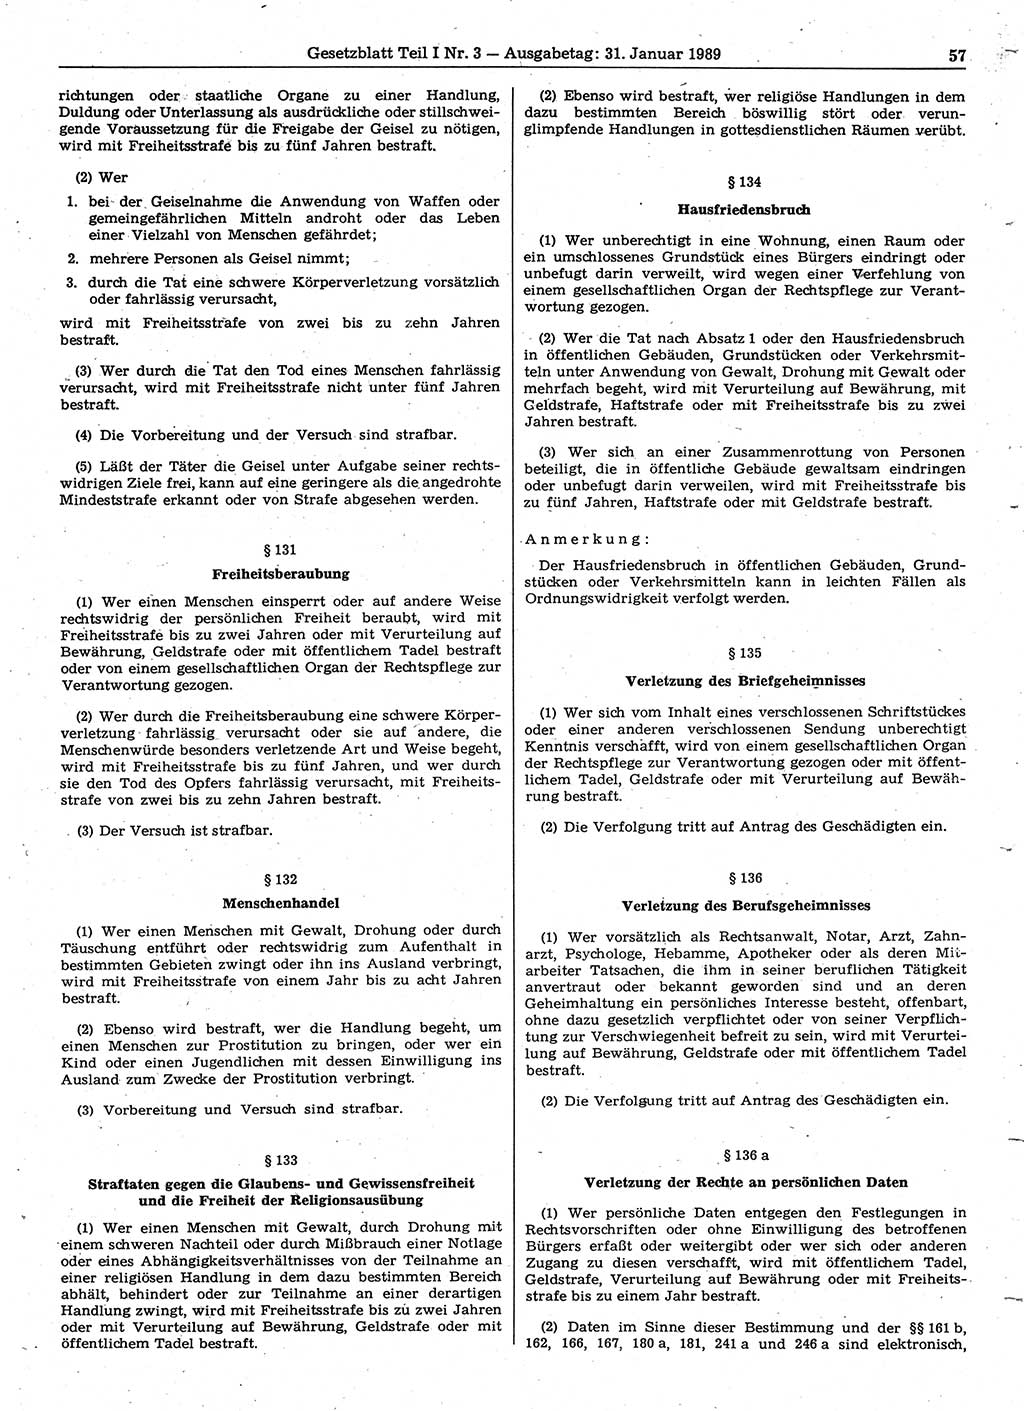 Gesetzblatt (GBl.) der Deutschen Demokratischen Republik (DDR) Teil Ⅰ 1989, Seite 57 (GBl. DDR Ⅰ 1989, S. 57)